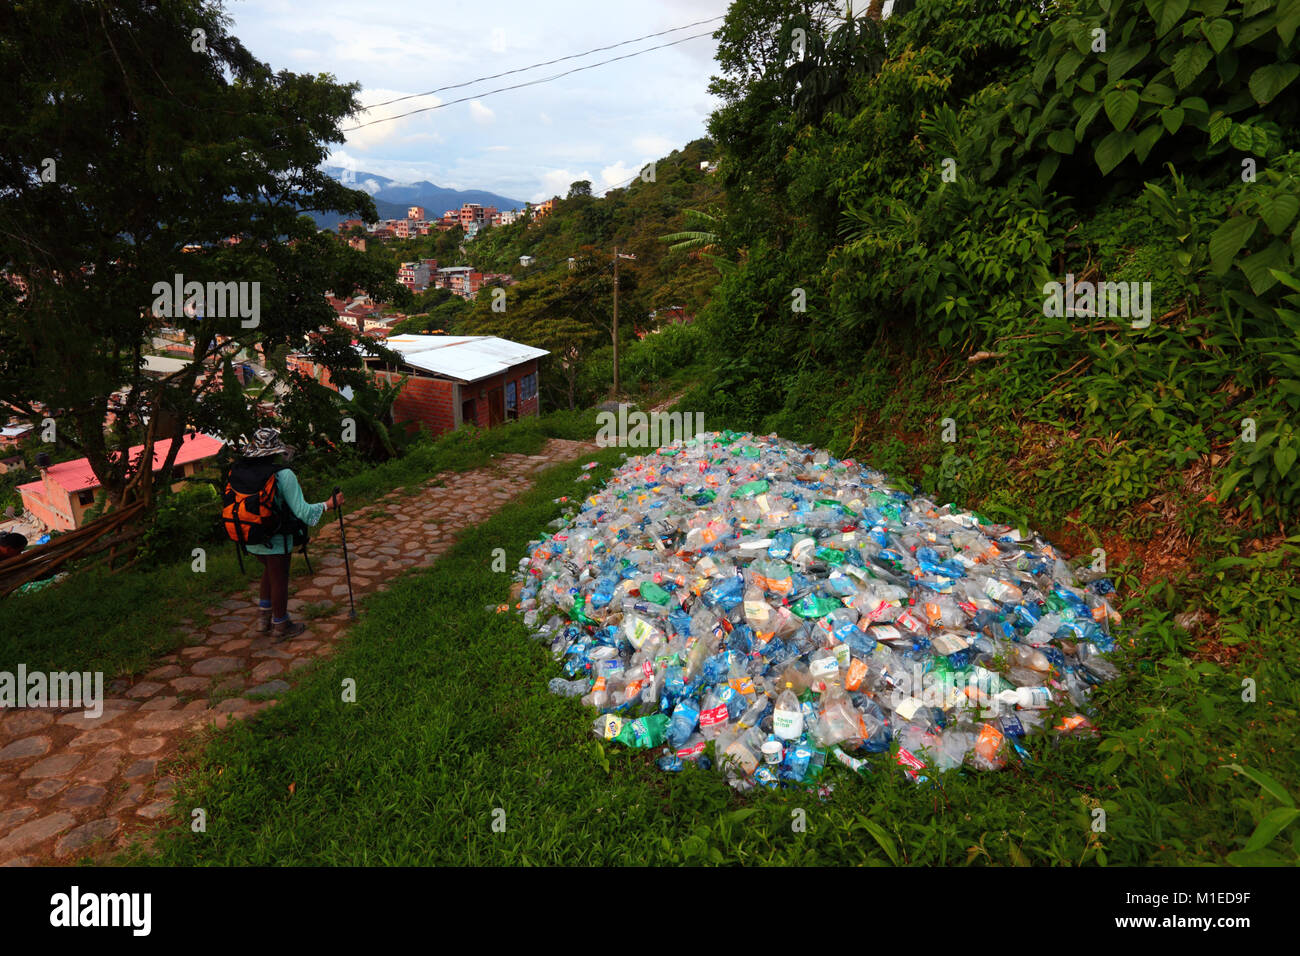 Touristische vorbei gehen. Stapel der abgeflachten Plastikflaschen in der Vegetation gedumpten Neben Fußweg, Coroico, Yungas region, Bolivien Stockfoto